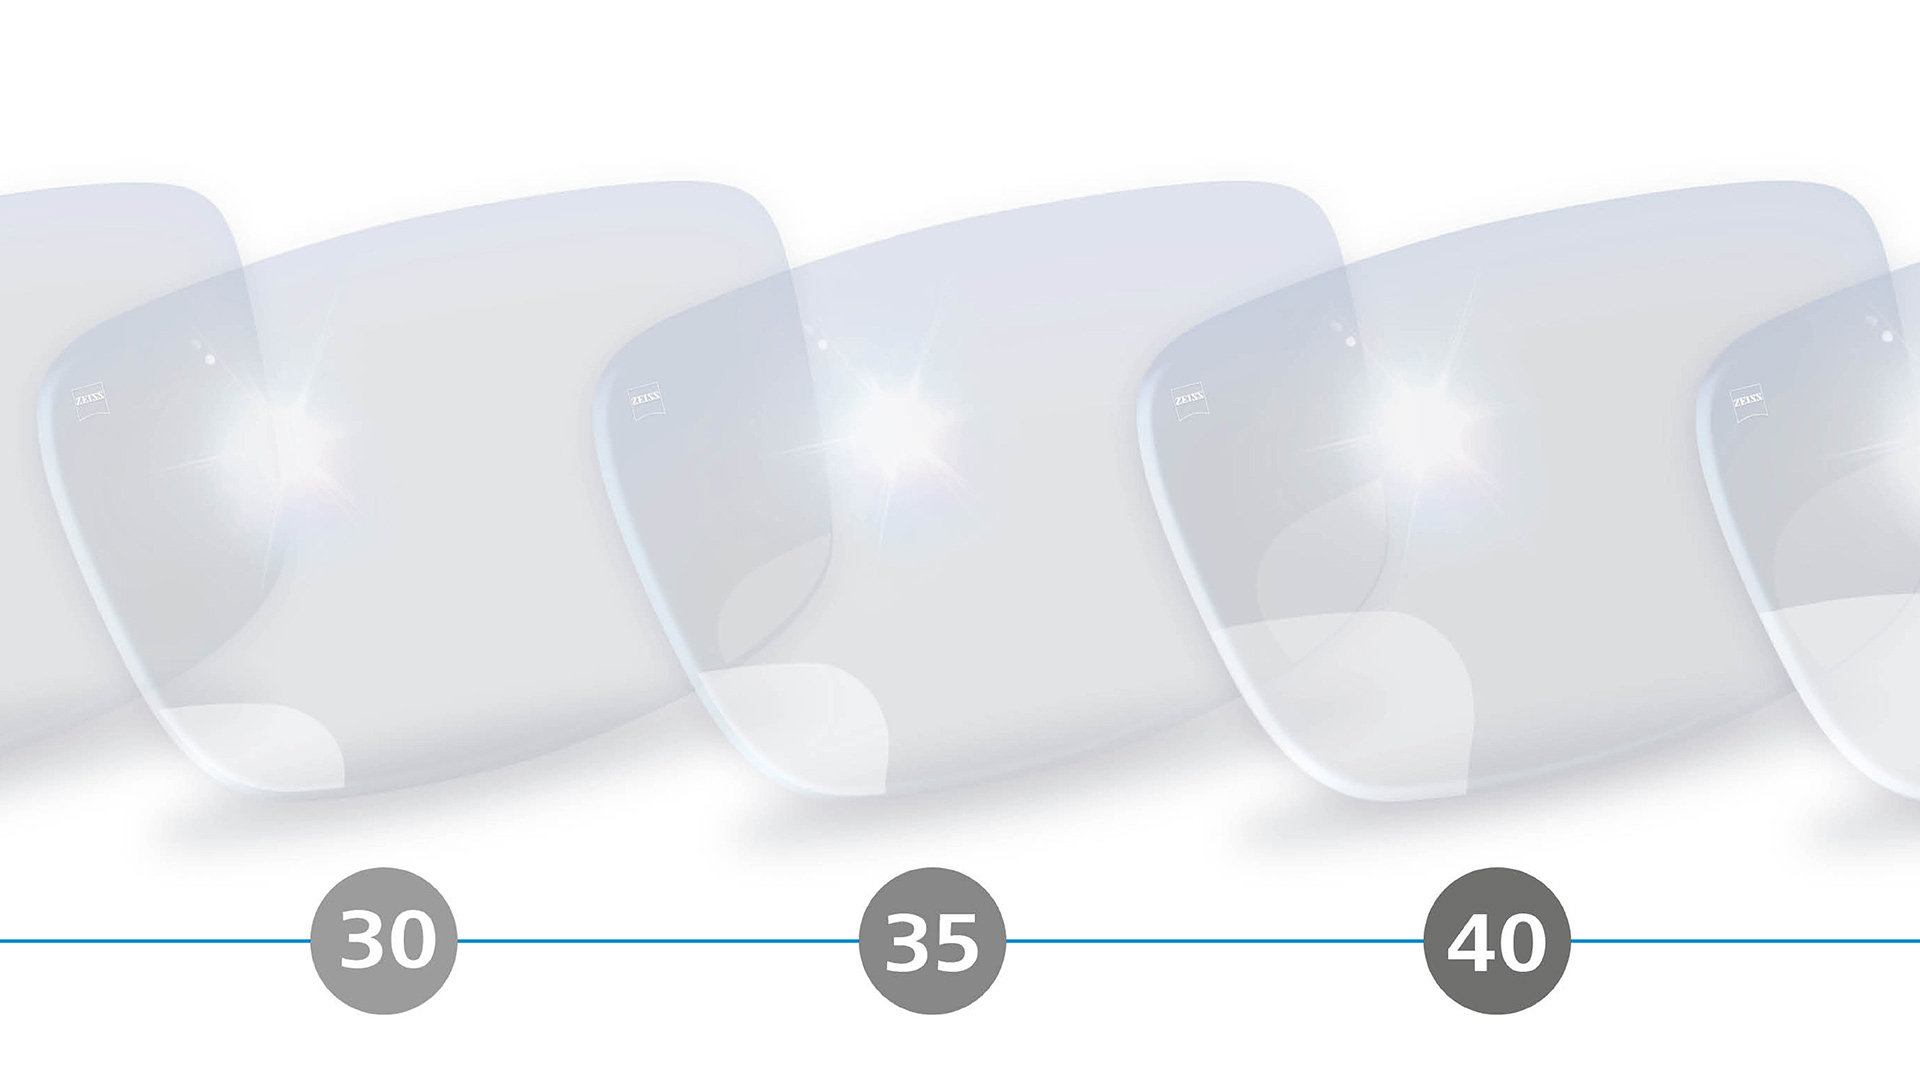 Ilustração em 3D de lentes digitais e progressivas com zonas periféricas desfocadas para a faixa etária dos 30 aos 40 anos.